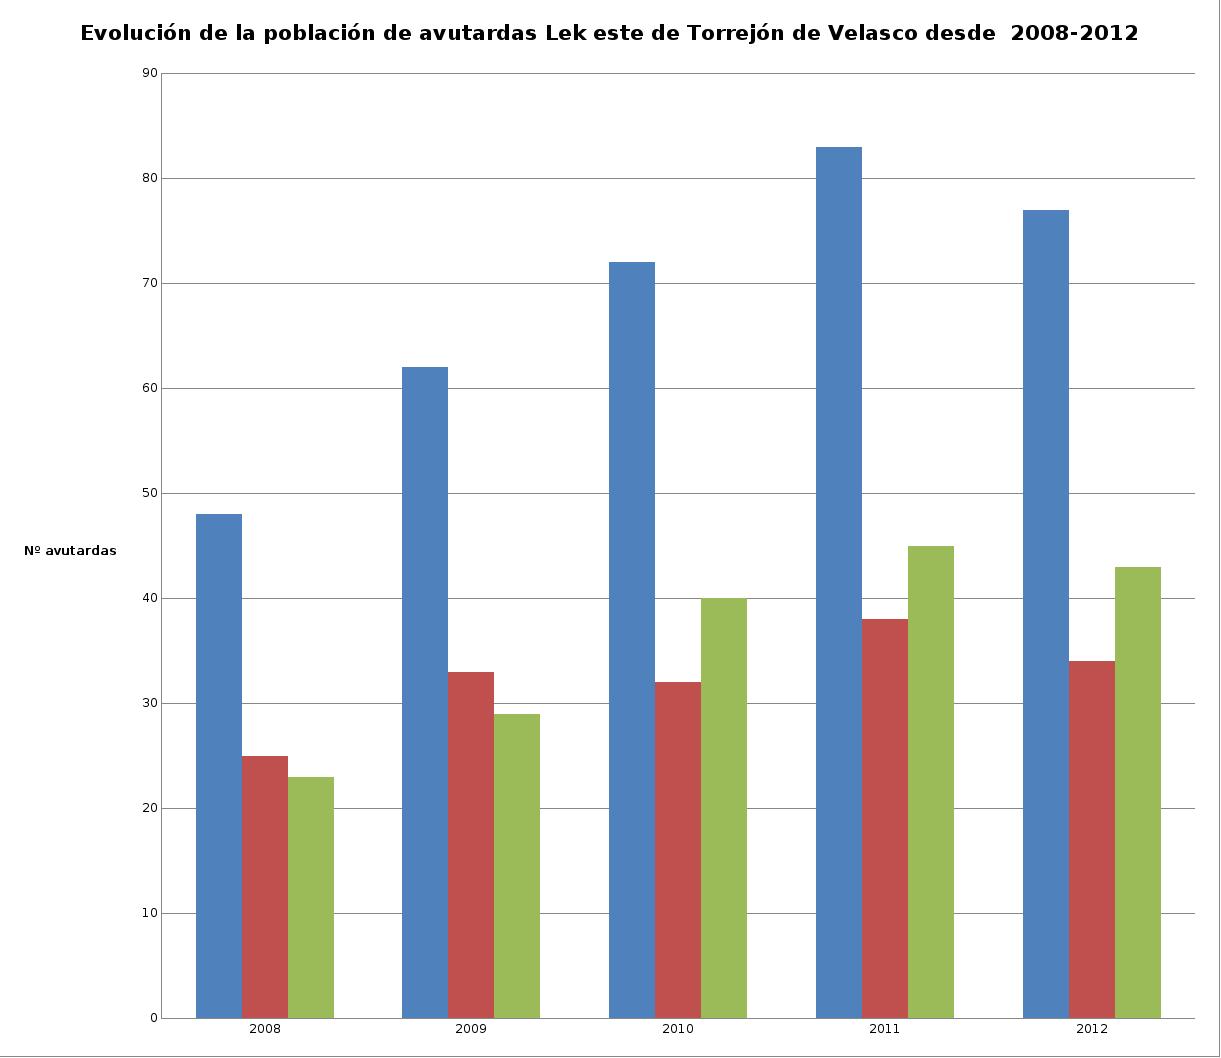 Figura 3. Evolución de la población de avutardas  del Lek oeste y por sexos  a partir de los censos realizados en Torrejón de Velasco desde el 2008.